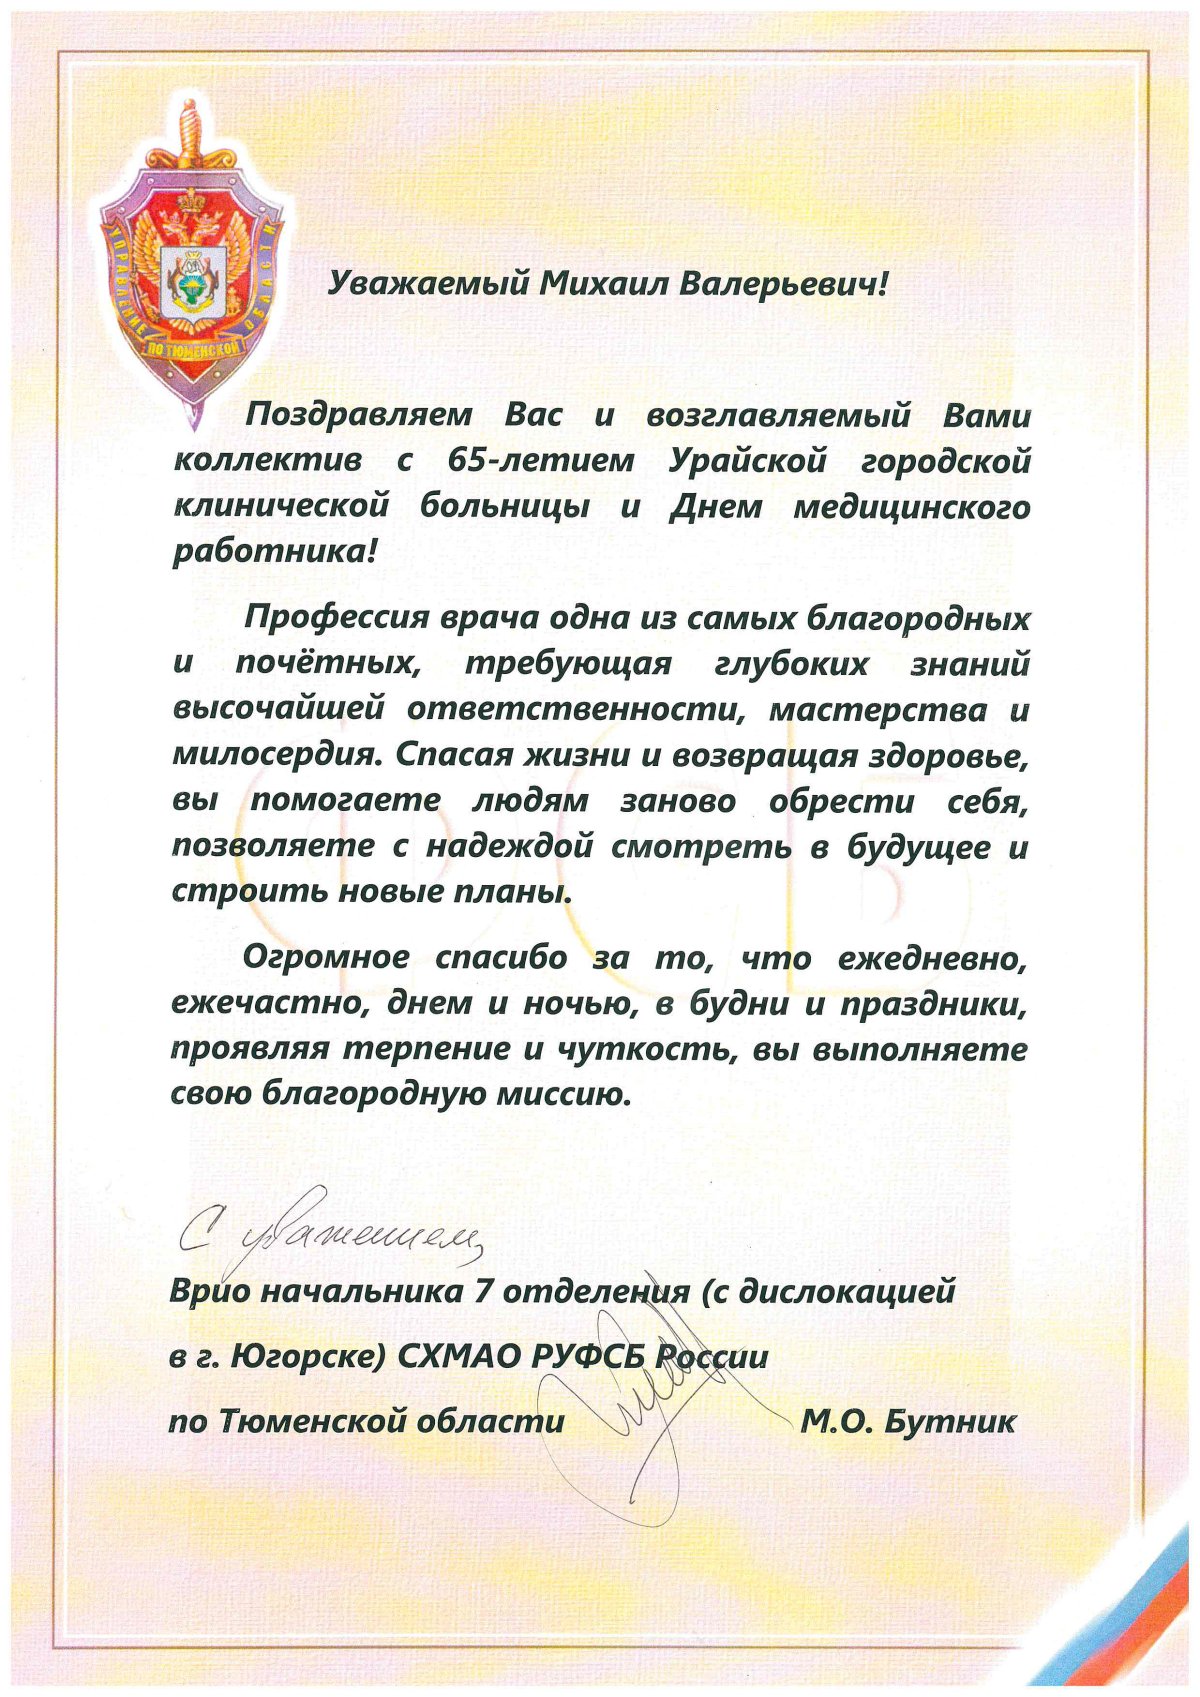 Поздравления с юбилеем больницы kinotv